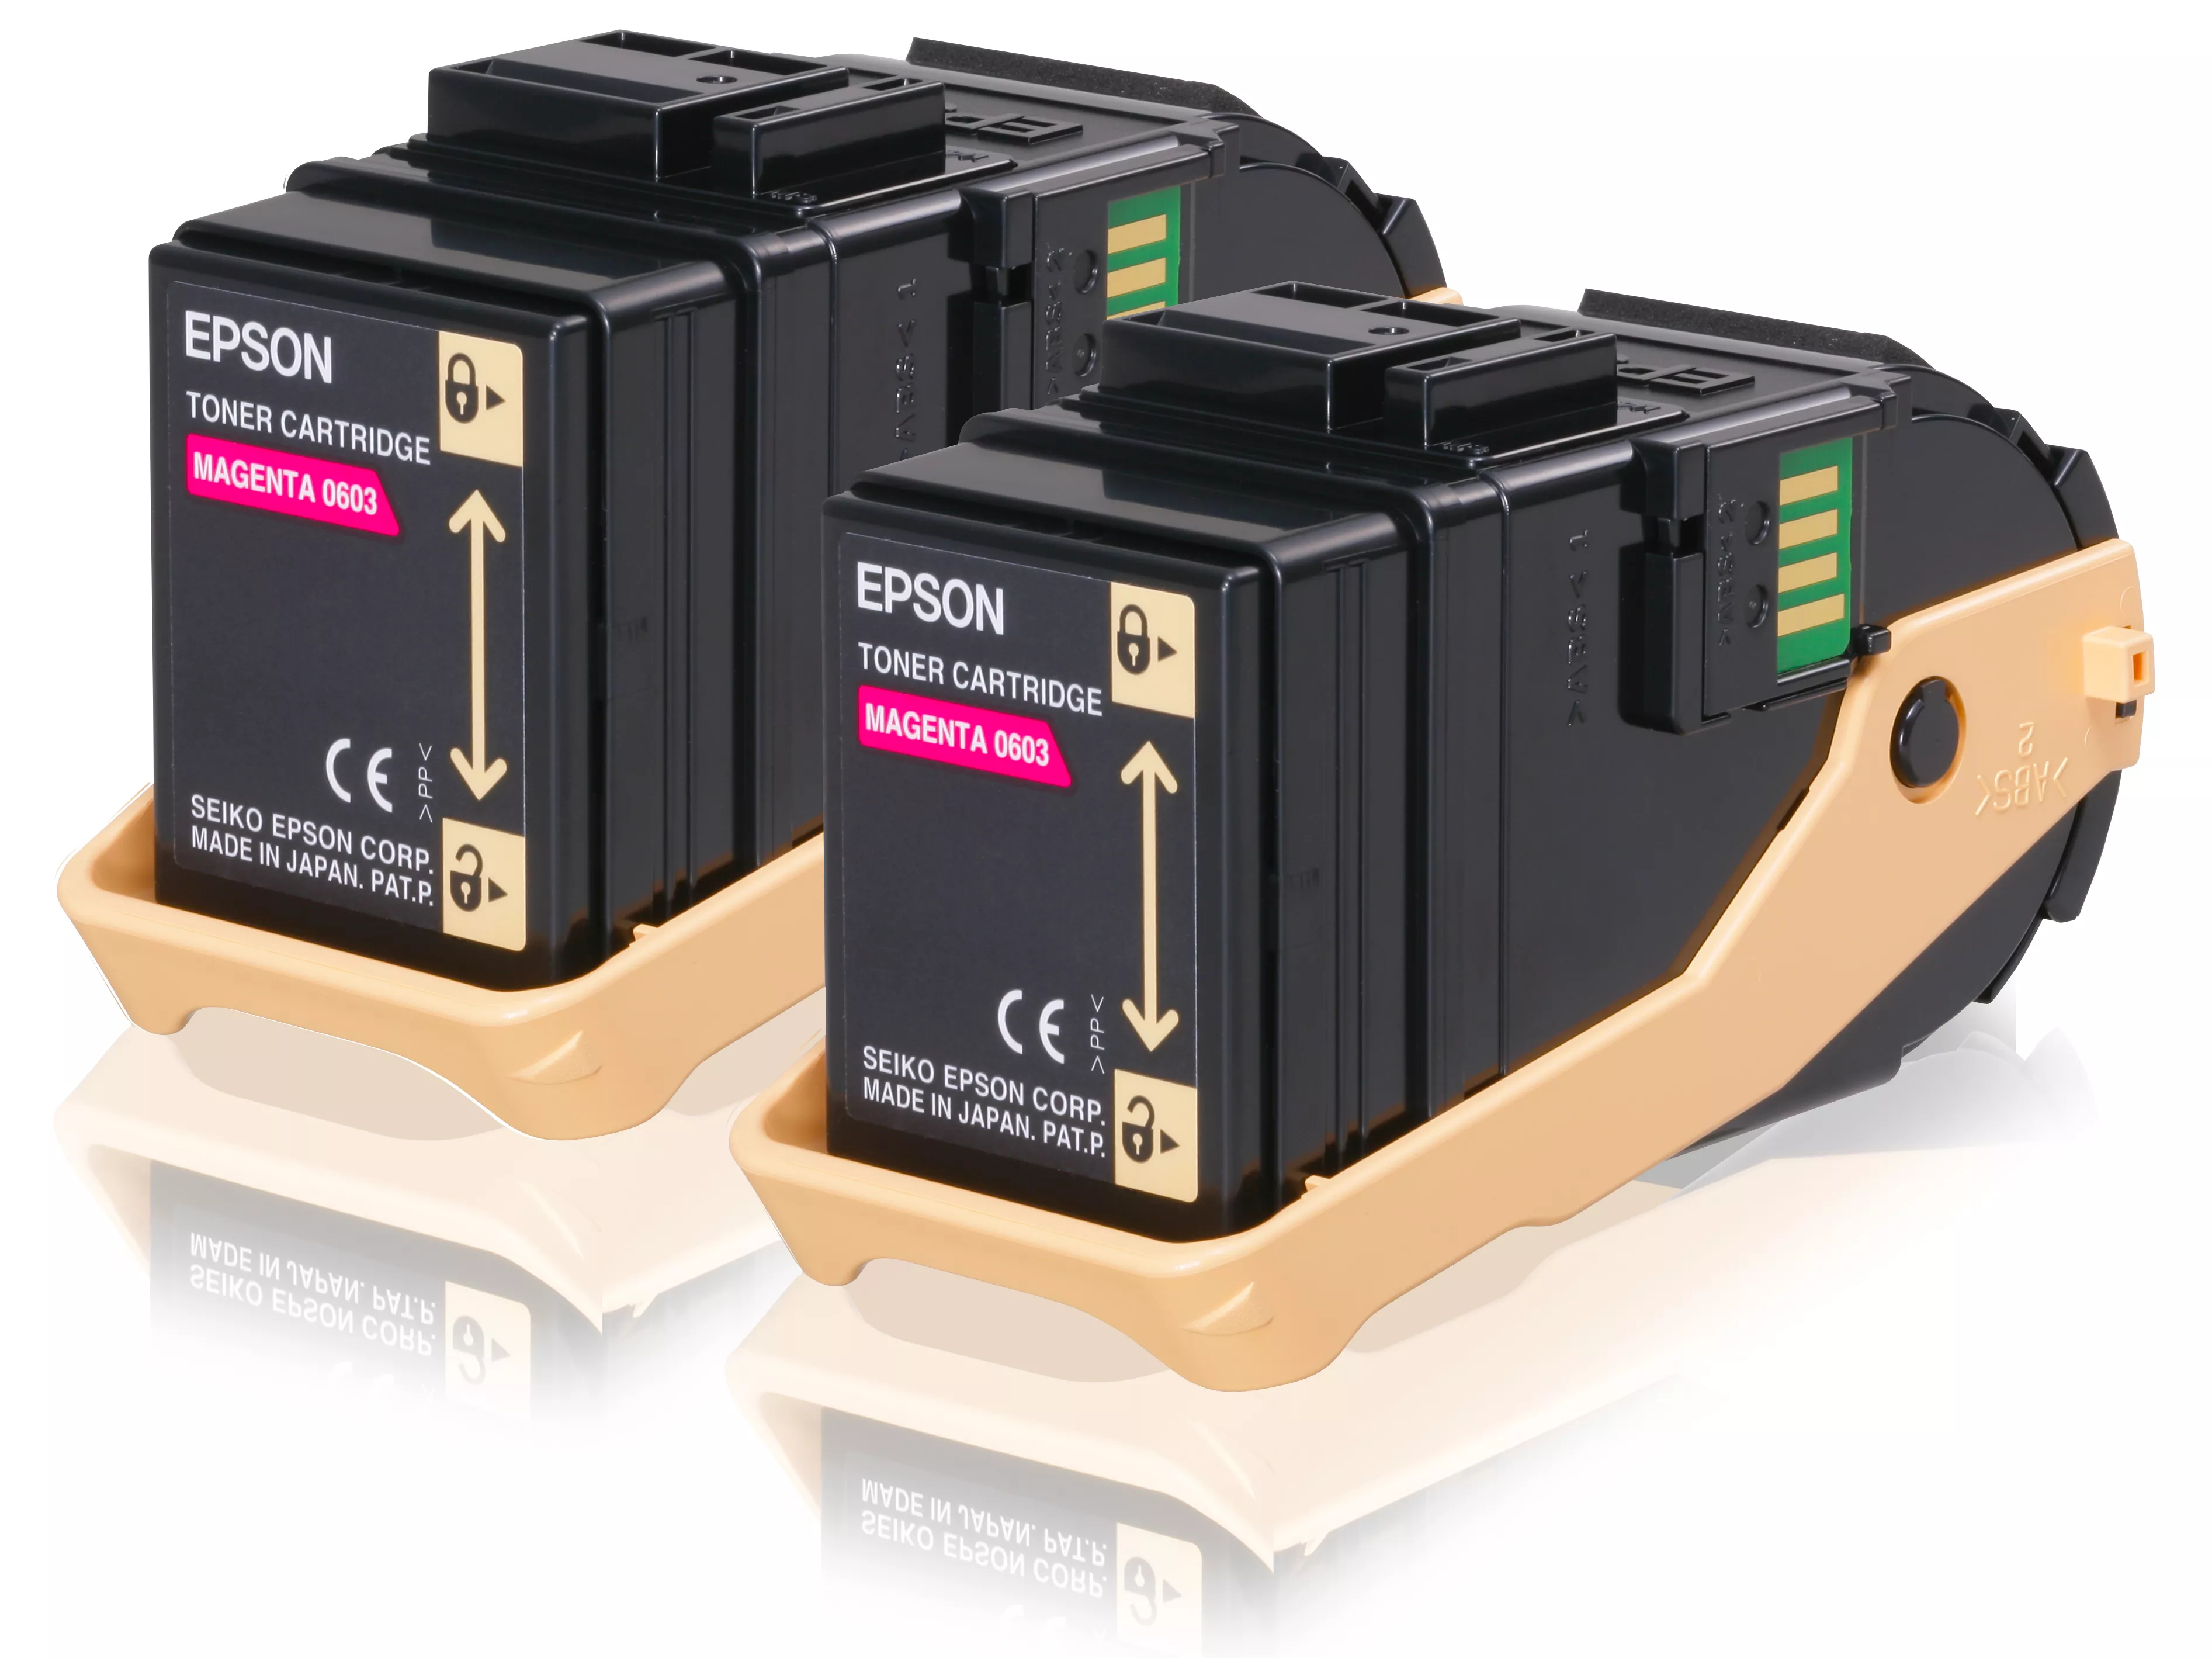 Achat EPSON AL-C9300N cartouche de toner magenta capacité et autres produits de la marque Epson